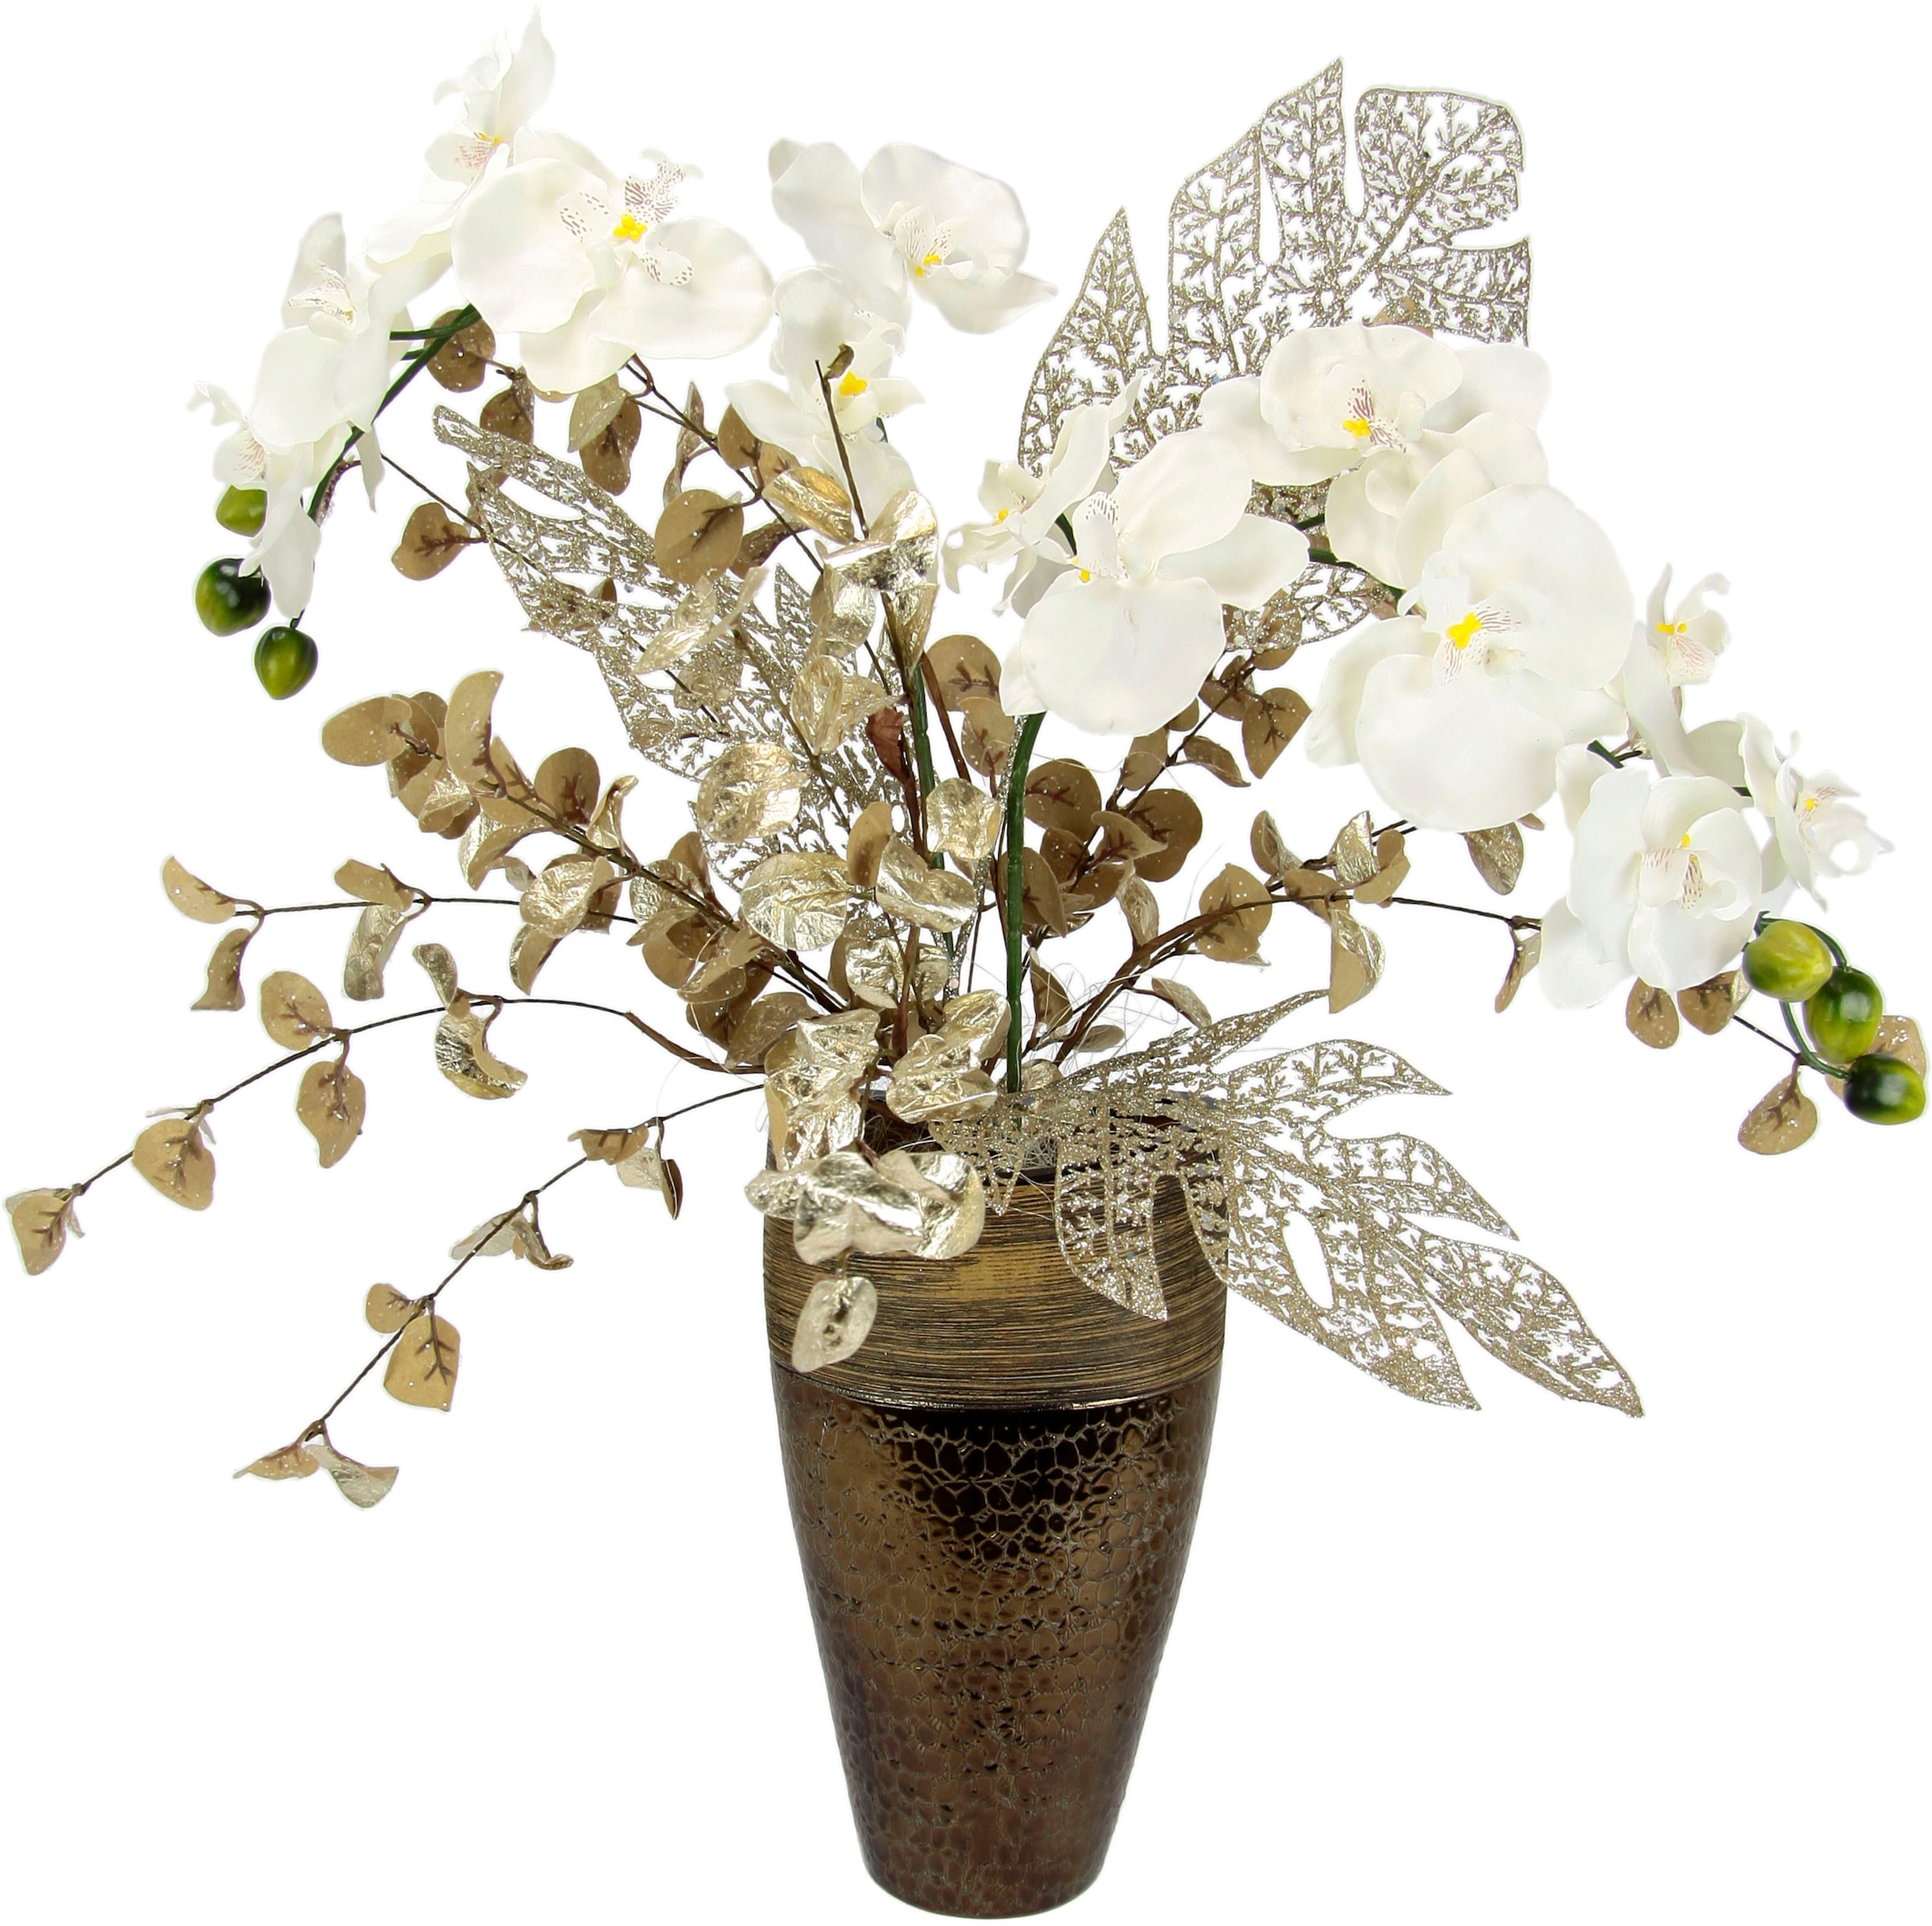 I.GE.A. Winterliche Kunstpflanze »Gesteck mit Orchidee prix! Weihnachtdeko,«, Kunstblumen-Arrangement, à bas in Keramikvase, Weihnachtsgesteck festliche Blumenensemble